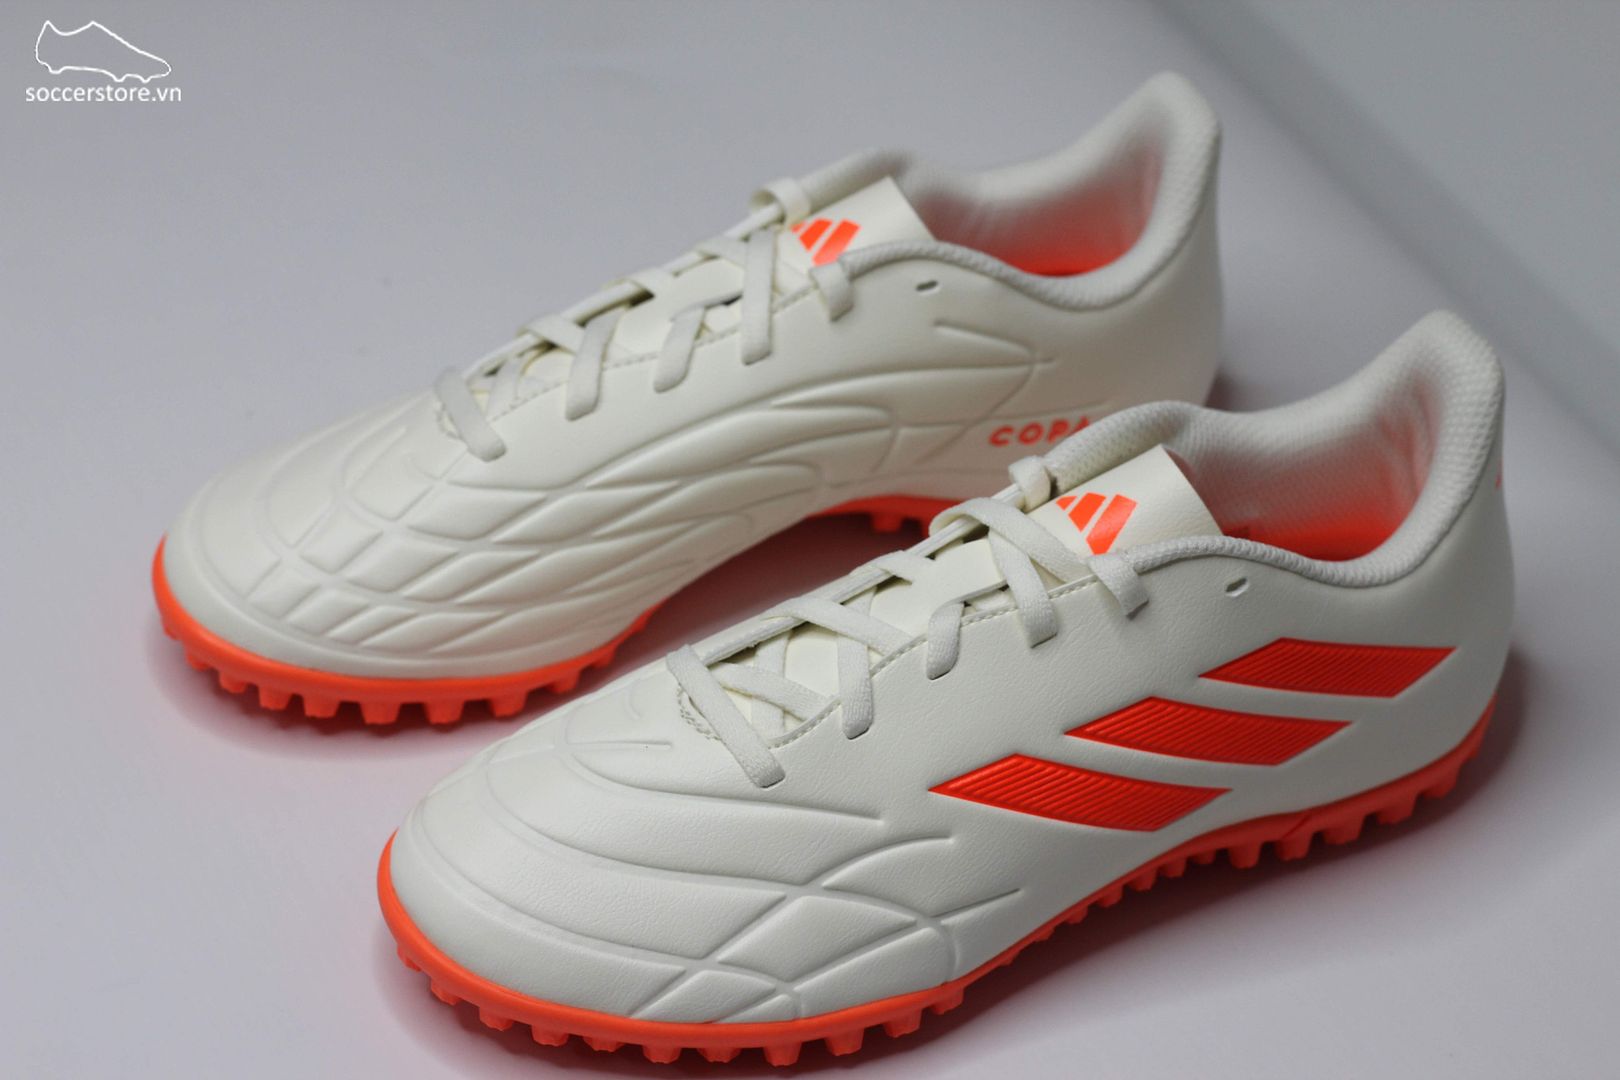 Adidas Copa Pure .4 TF Heatspawn pack màu trắng ngà-GY9048